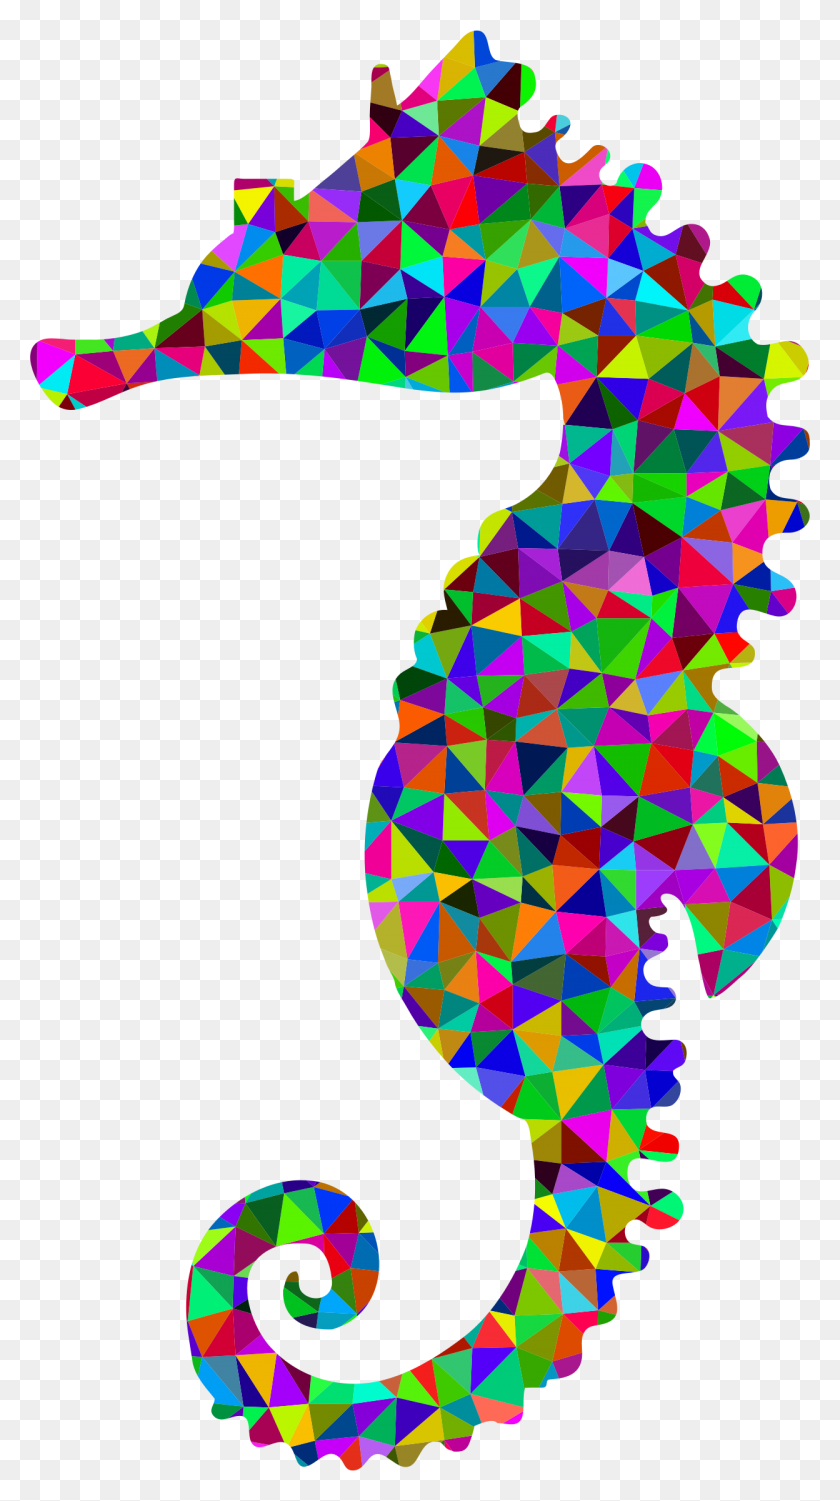 1248x2306 Este Diseño De Iconos Gratis De Low Poly Prismático Seahorse Seahorse Low Poly, Graphics, Ornamento Hd Png